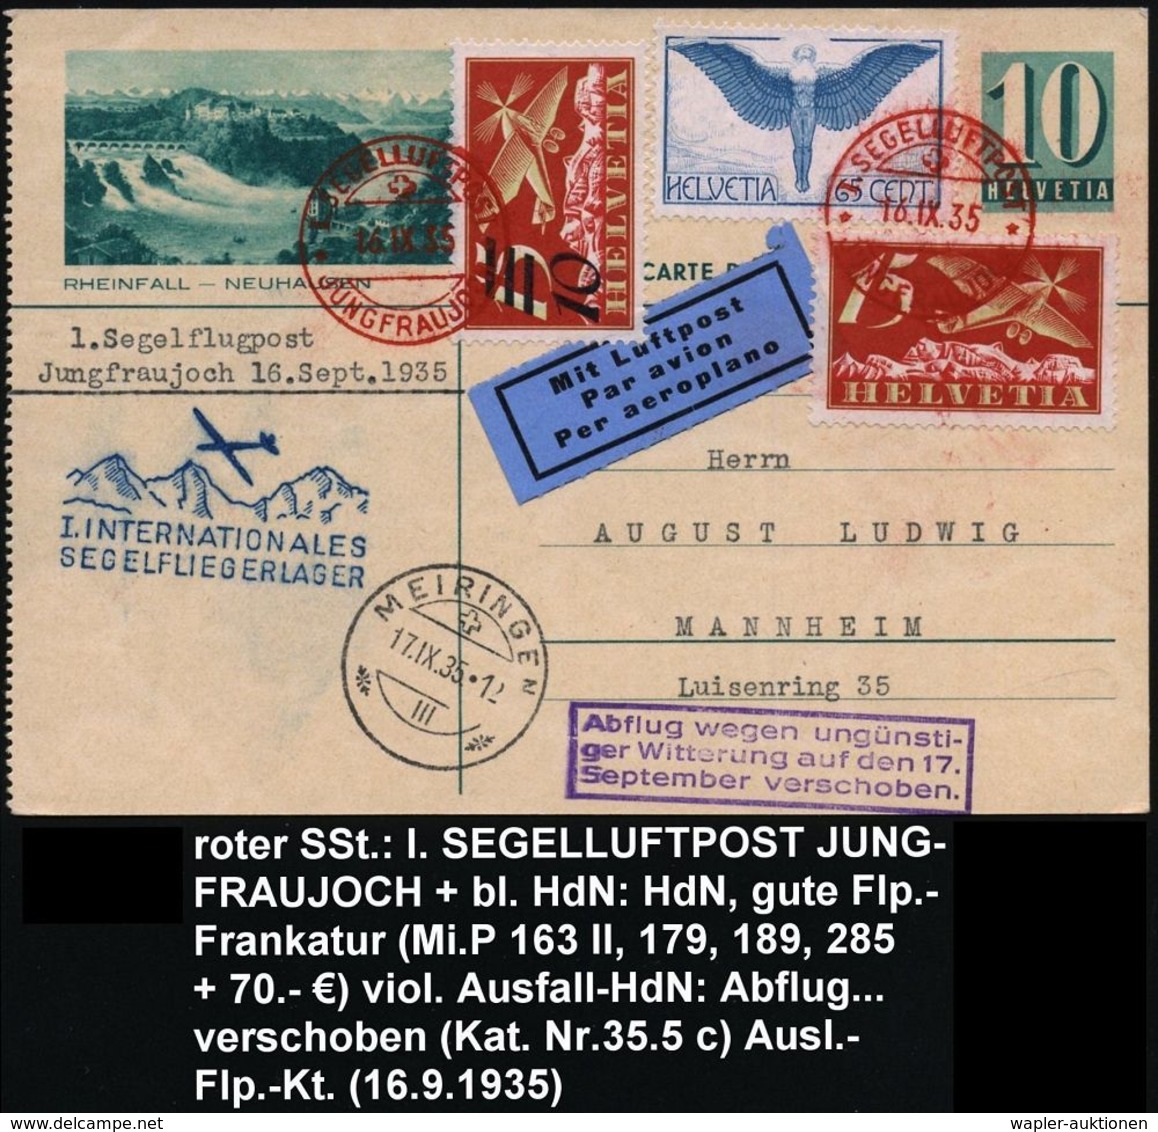 SEGELFLIEGEN / SEGELFLUGSPORT : SCHWEIZ 1935 (16.9.) Roter SSt: JUNGFRAUJOCH/I.SEGELLUFTPOST 2x Auf Flp. 65 C. "Ikarus"  - Avions